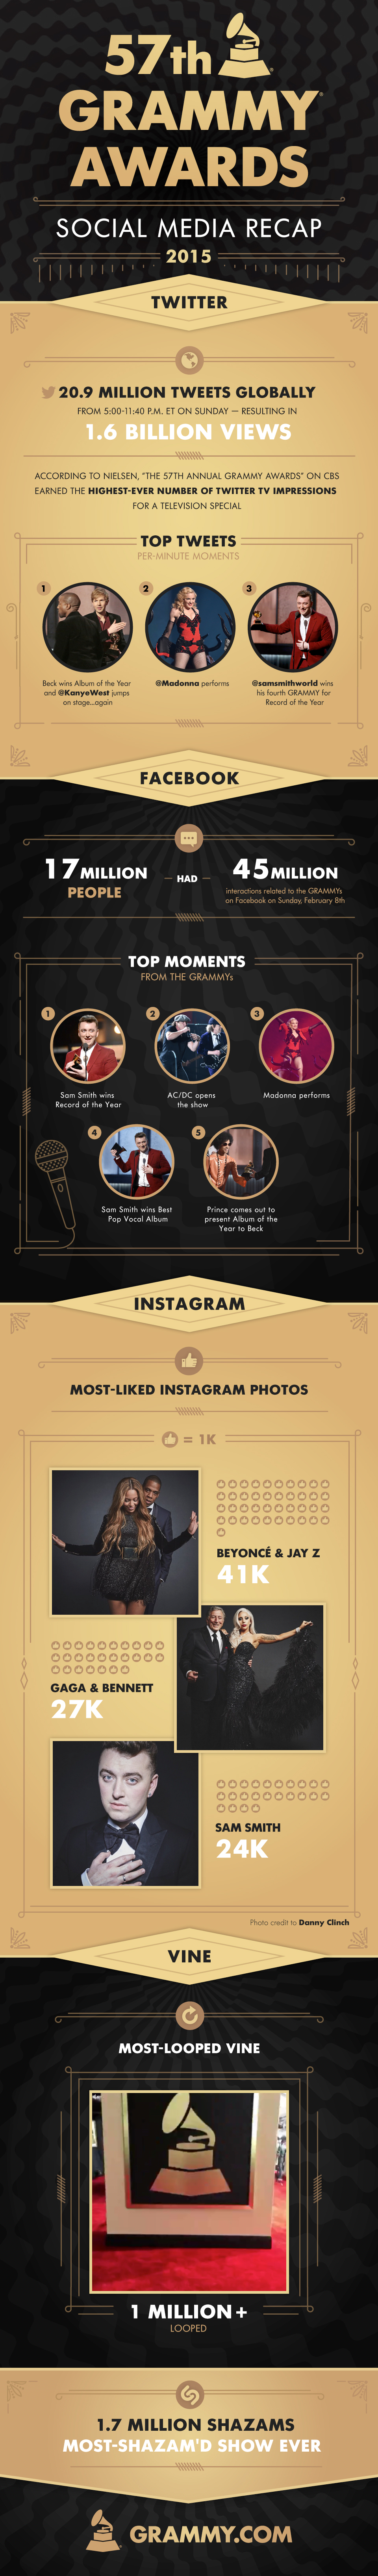 57th GRAMMY Awards Social Media Recap 2015